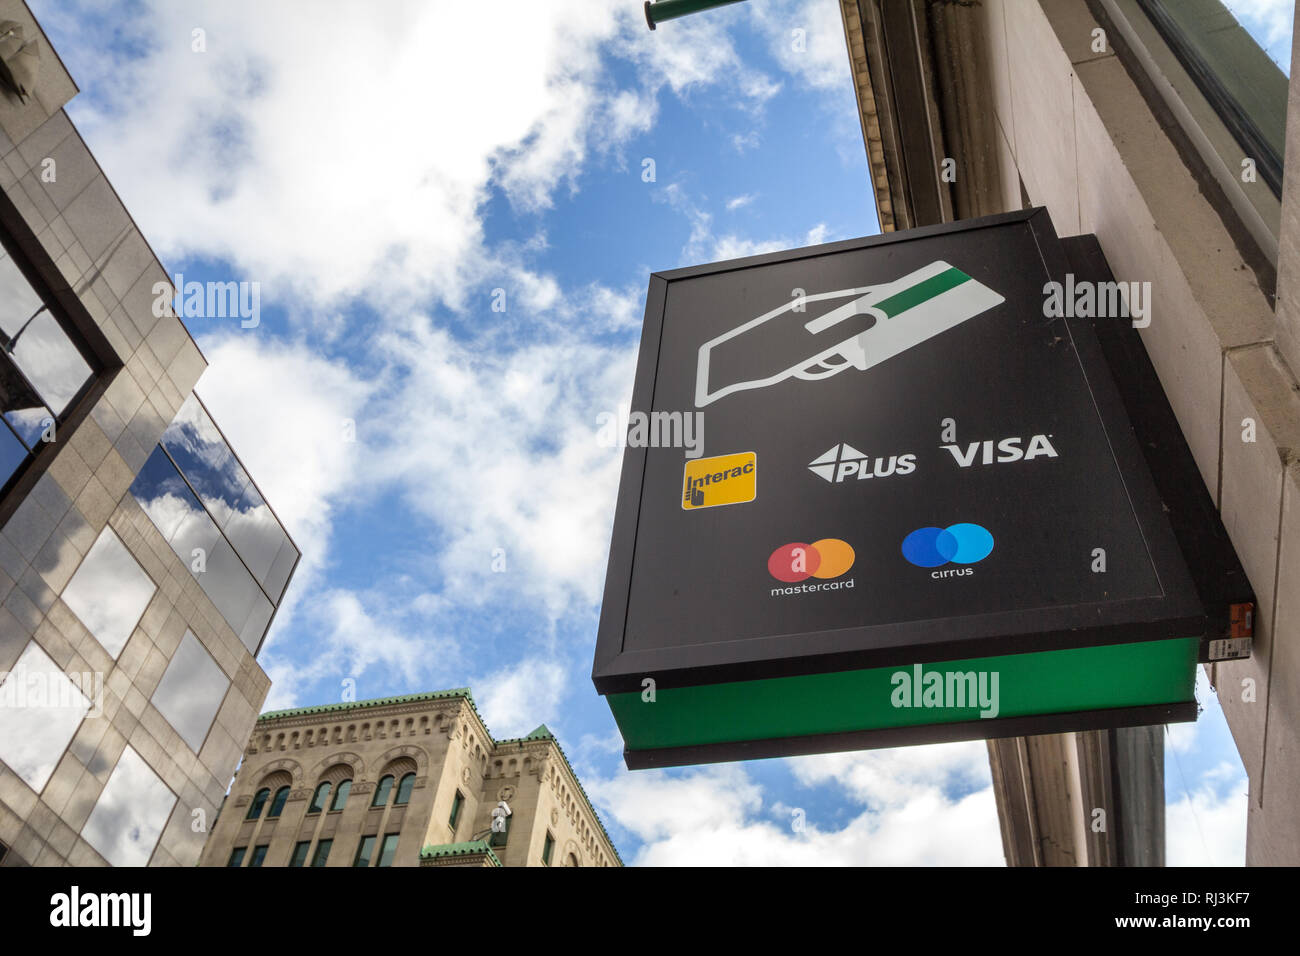 MONTREAL, Canadá - 7 de noviembre de 2018: Firmar en un cajero automático con el logos indicando el crédito y débito se aceptan tarjetas de pago, que incluyen Visa, Mastercard Foto de stock